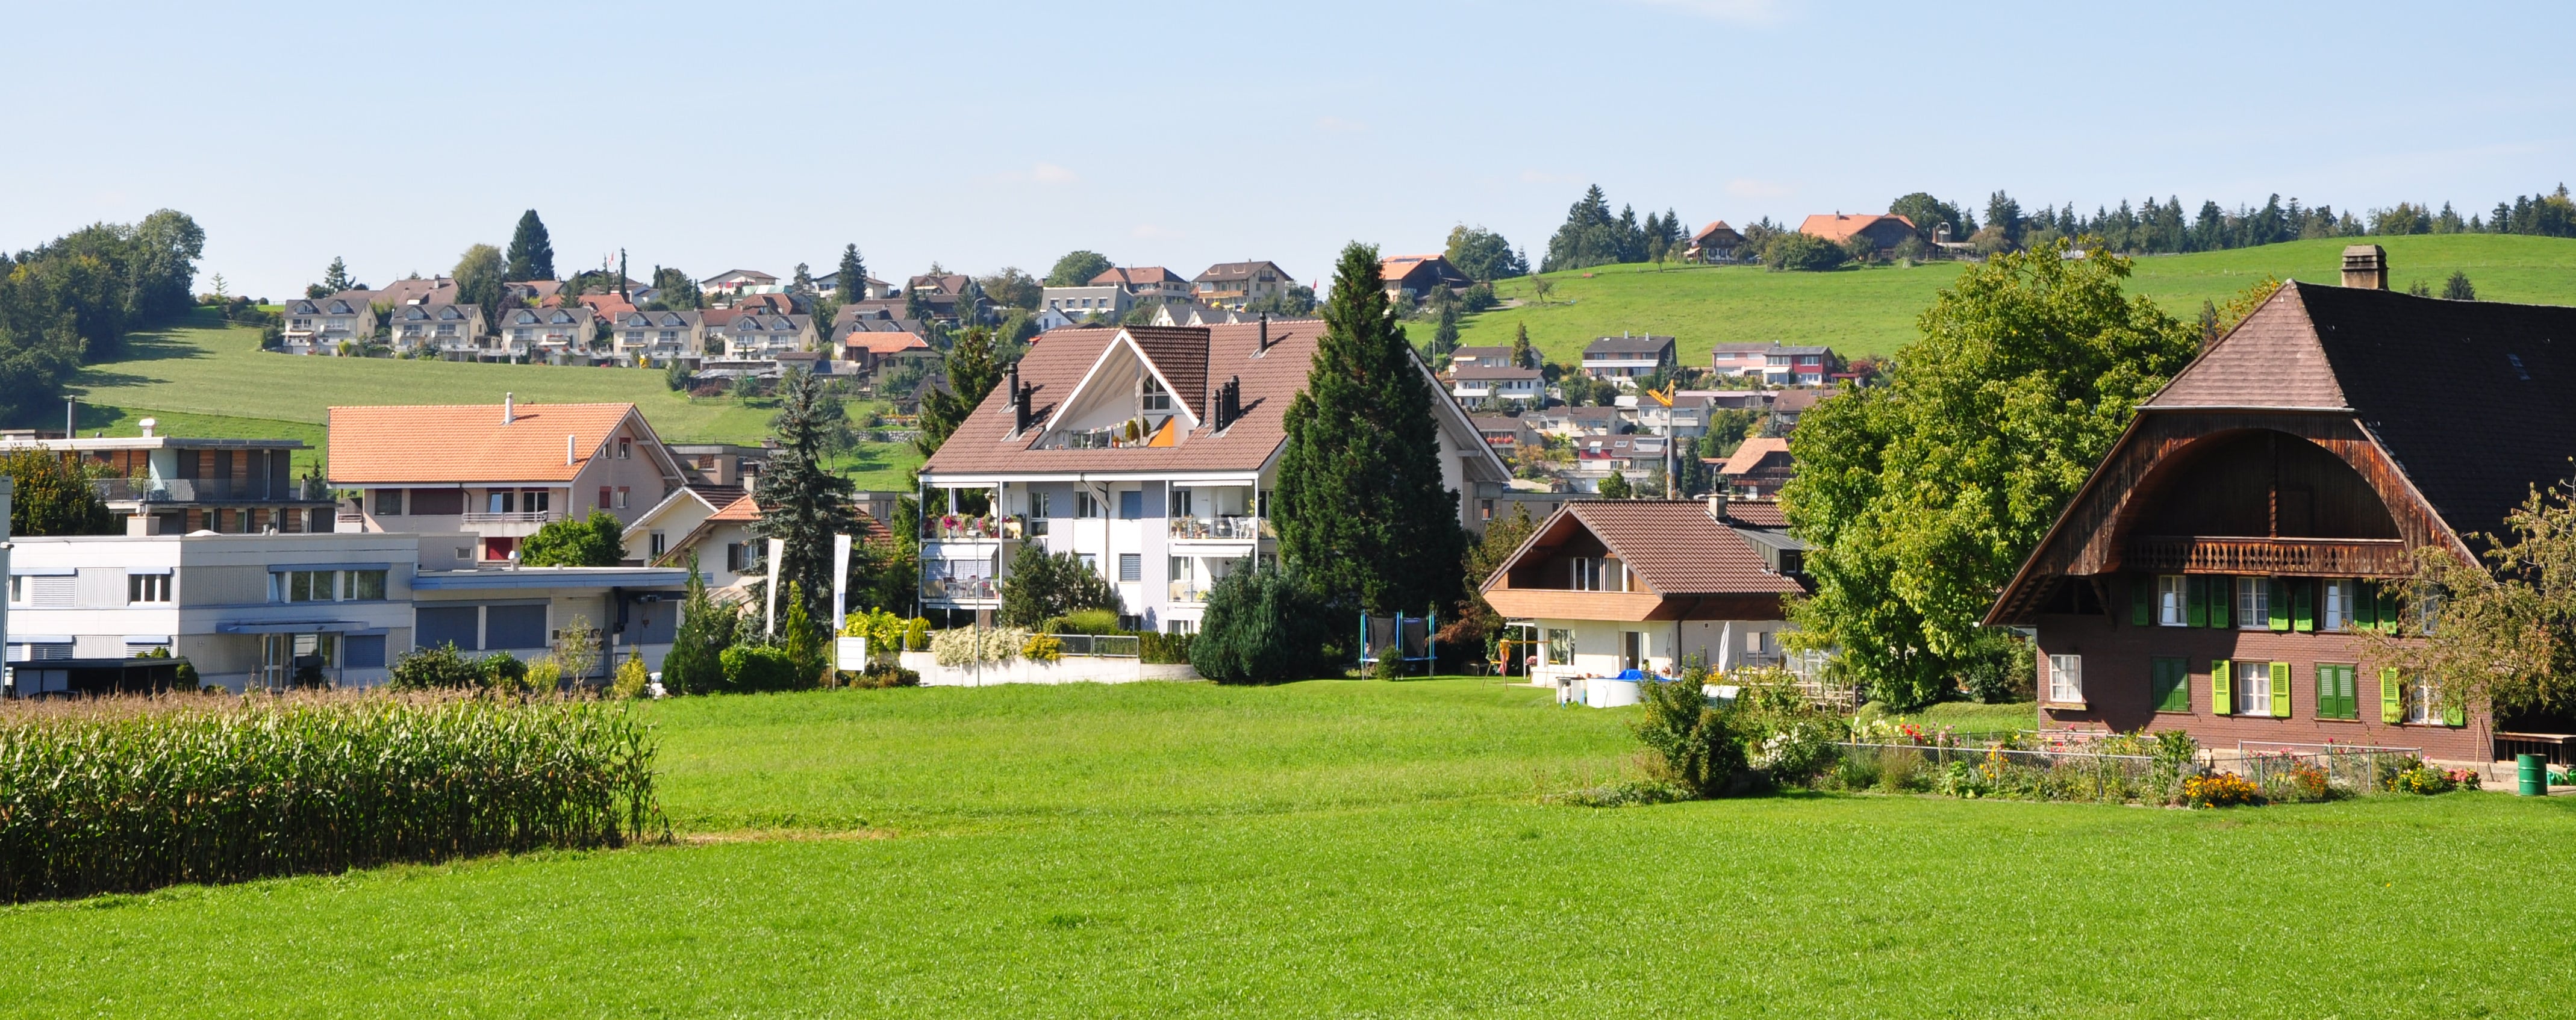 Immobilien verkaufen in der Schweiz - ein guter Zeitpunkt?